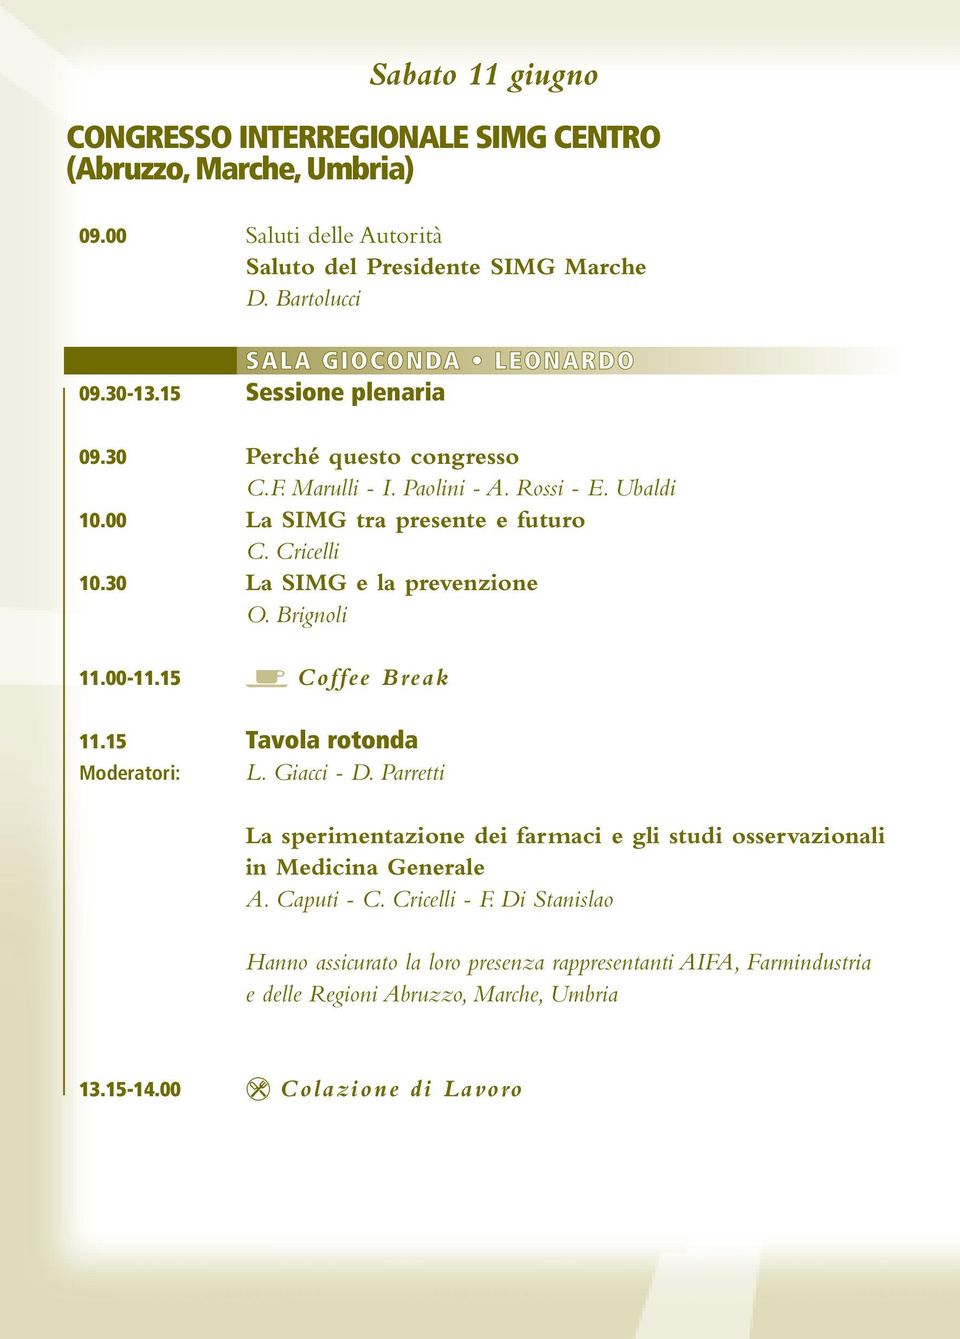 Cricelli 10.30 La SIMG e la prevenzione O. Brignoli 11.00-11.15 Coffee Break 11.15 Tavola rotonda Moderatori: L. Giacci - D.